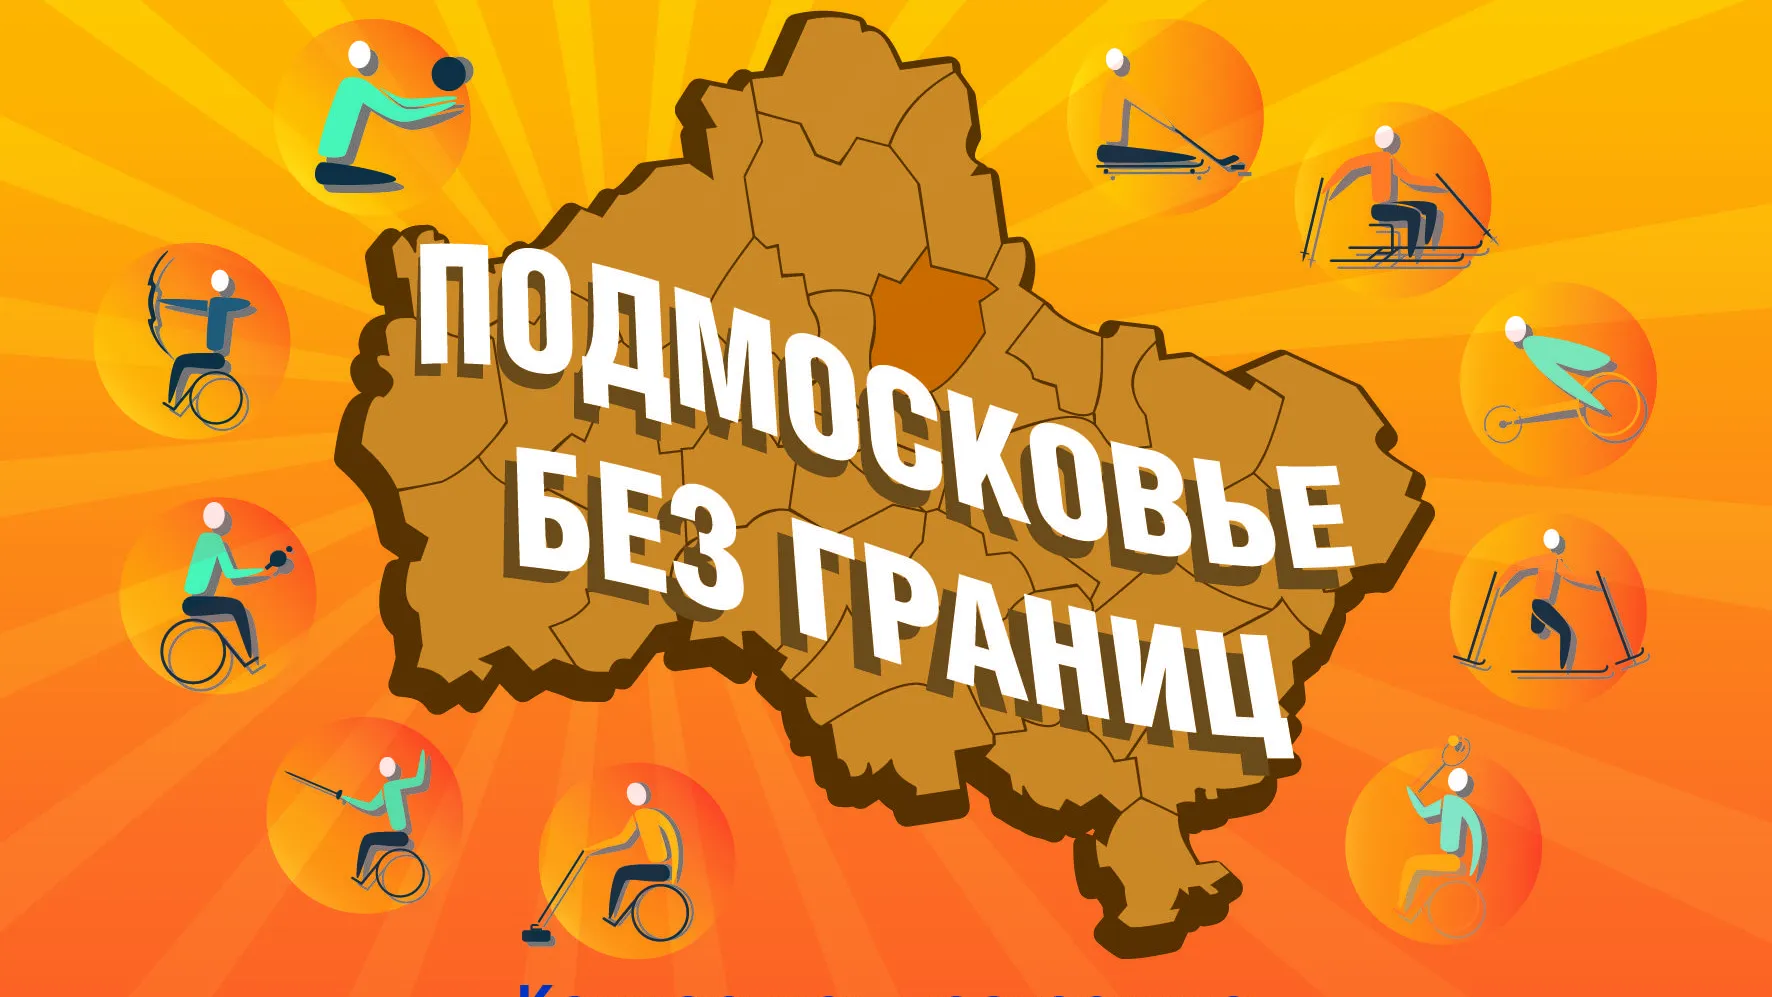 Фестиваль «Подмосковье БЕЗ границ» пройдет в округе Пушкинский